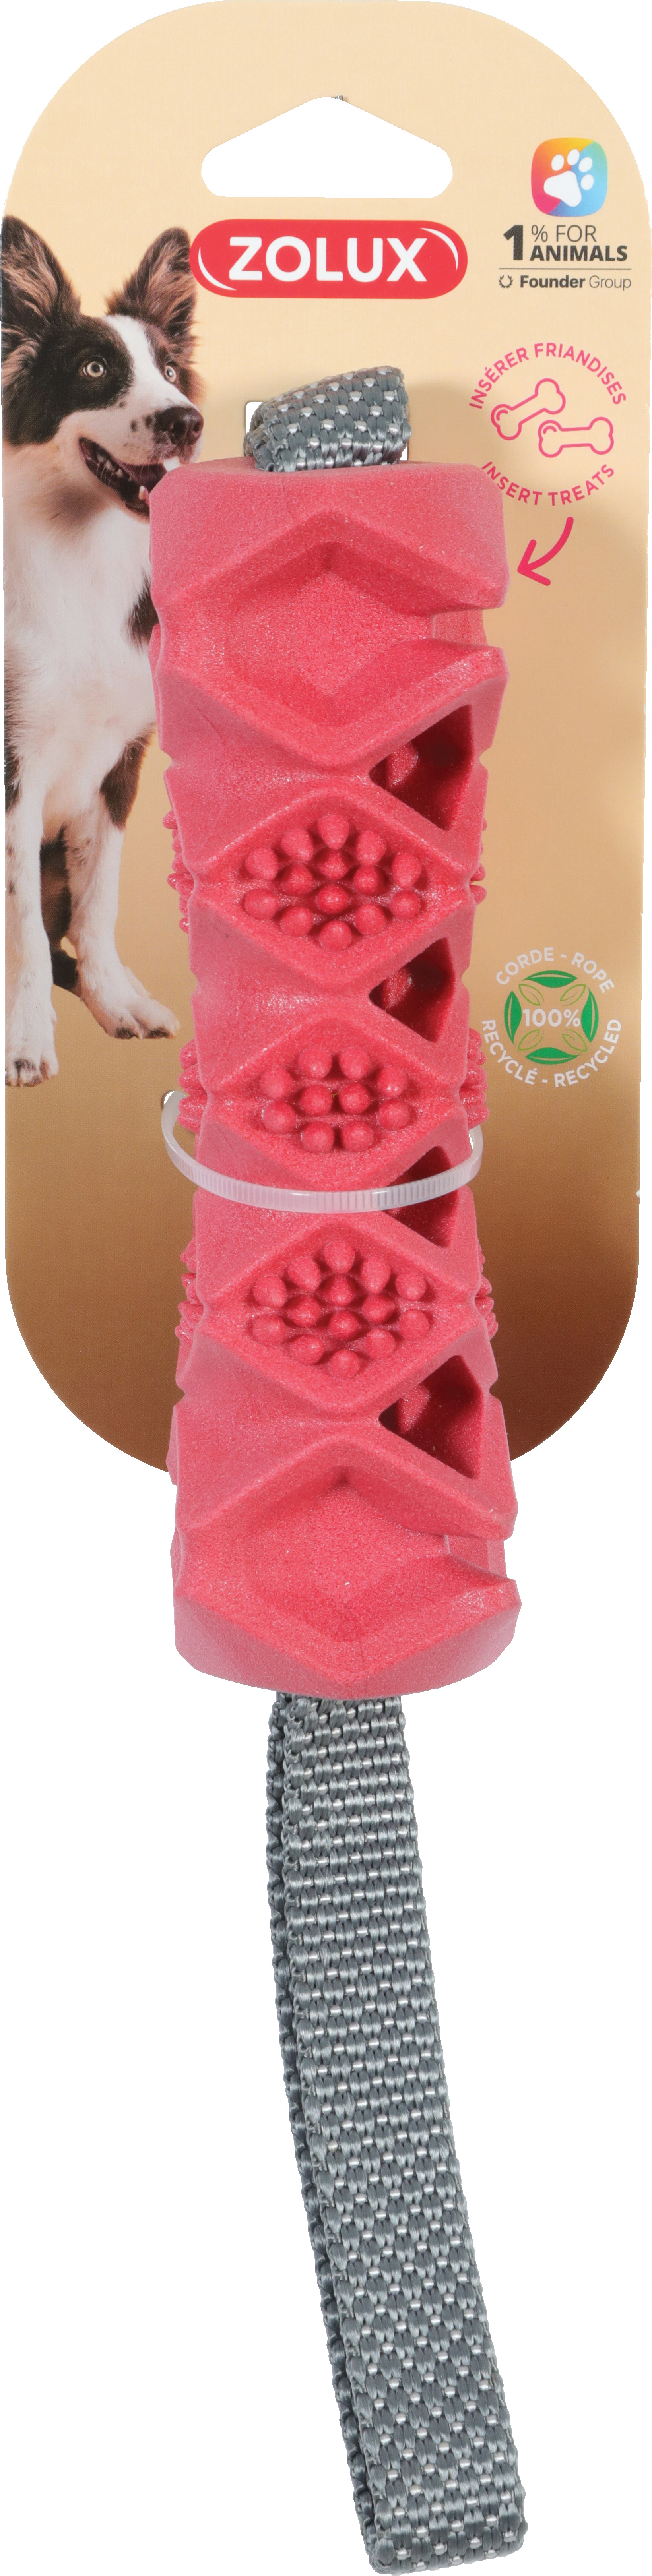 Zolux Outdoor-Seilspielzeug mit TPR-Knochen für Hunde – 3 Farben erhältlich